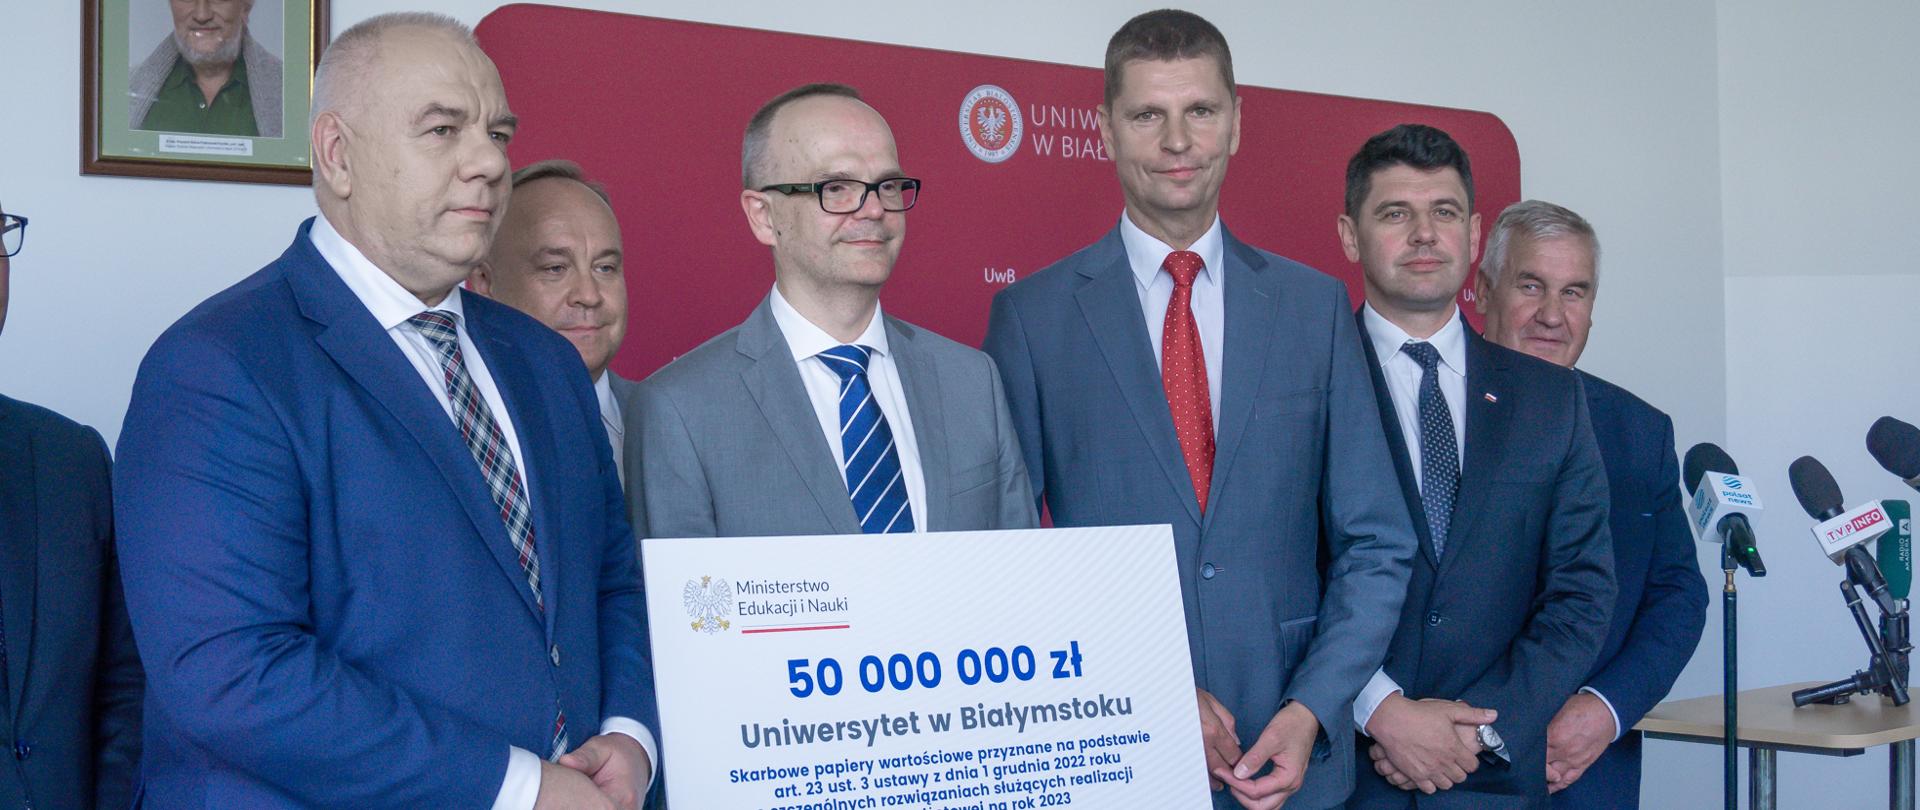 Sześciu mężczyzn w garniturach. W środku mężczyzna trzyma duży karton z napisem 50 000 000 Uniwersytet w Białymstoku.